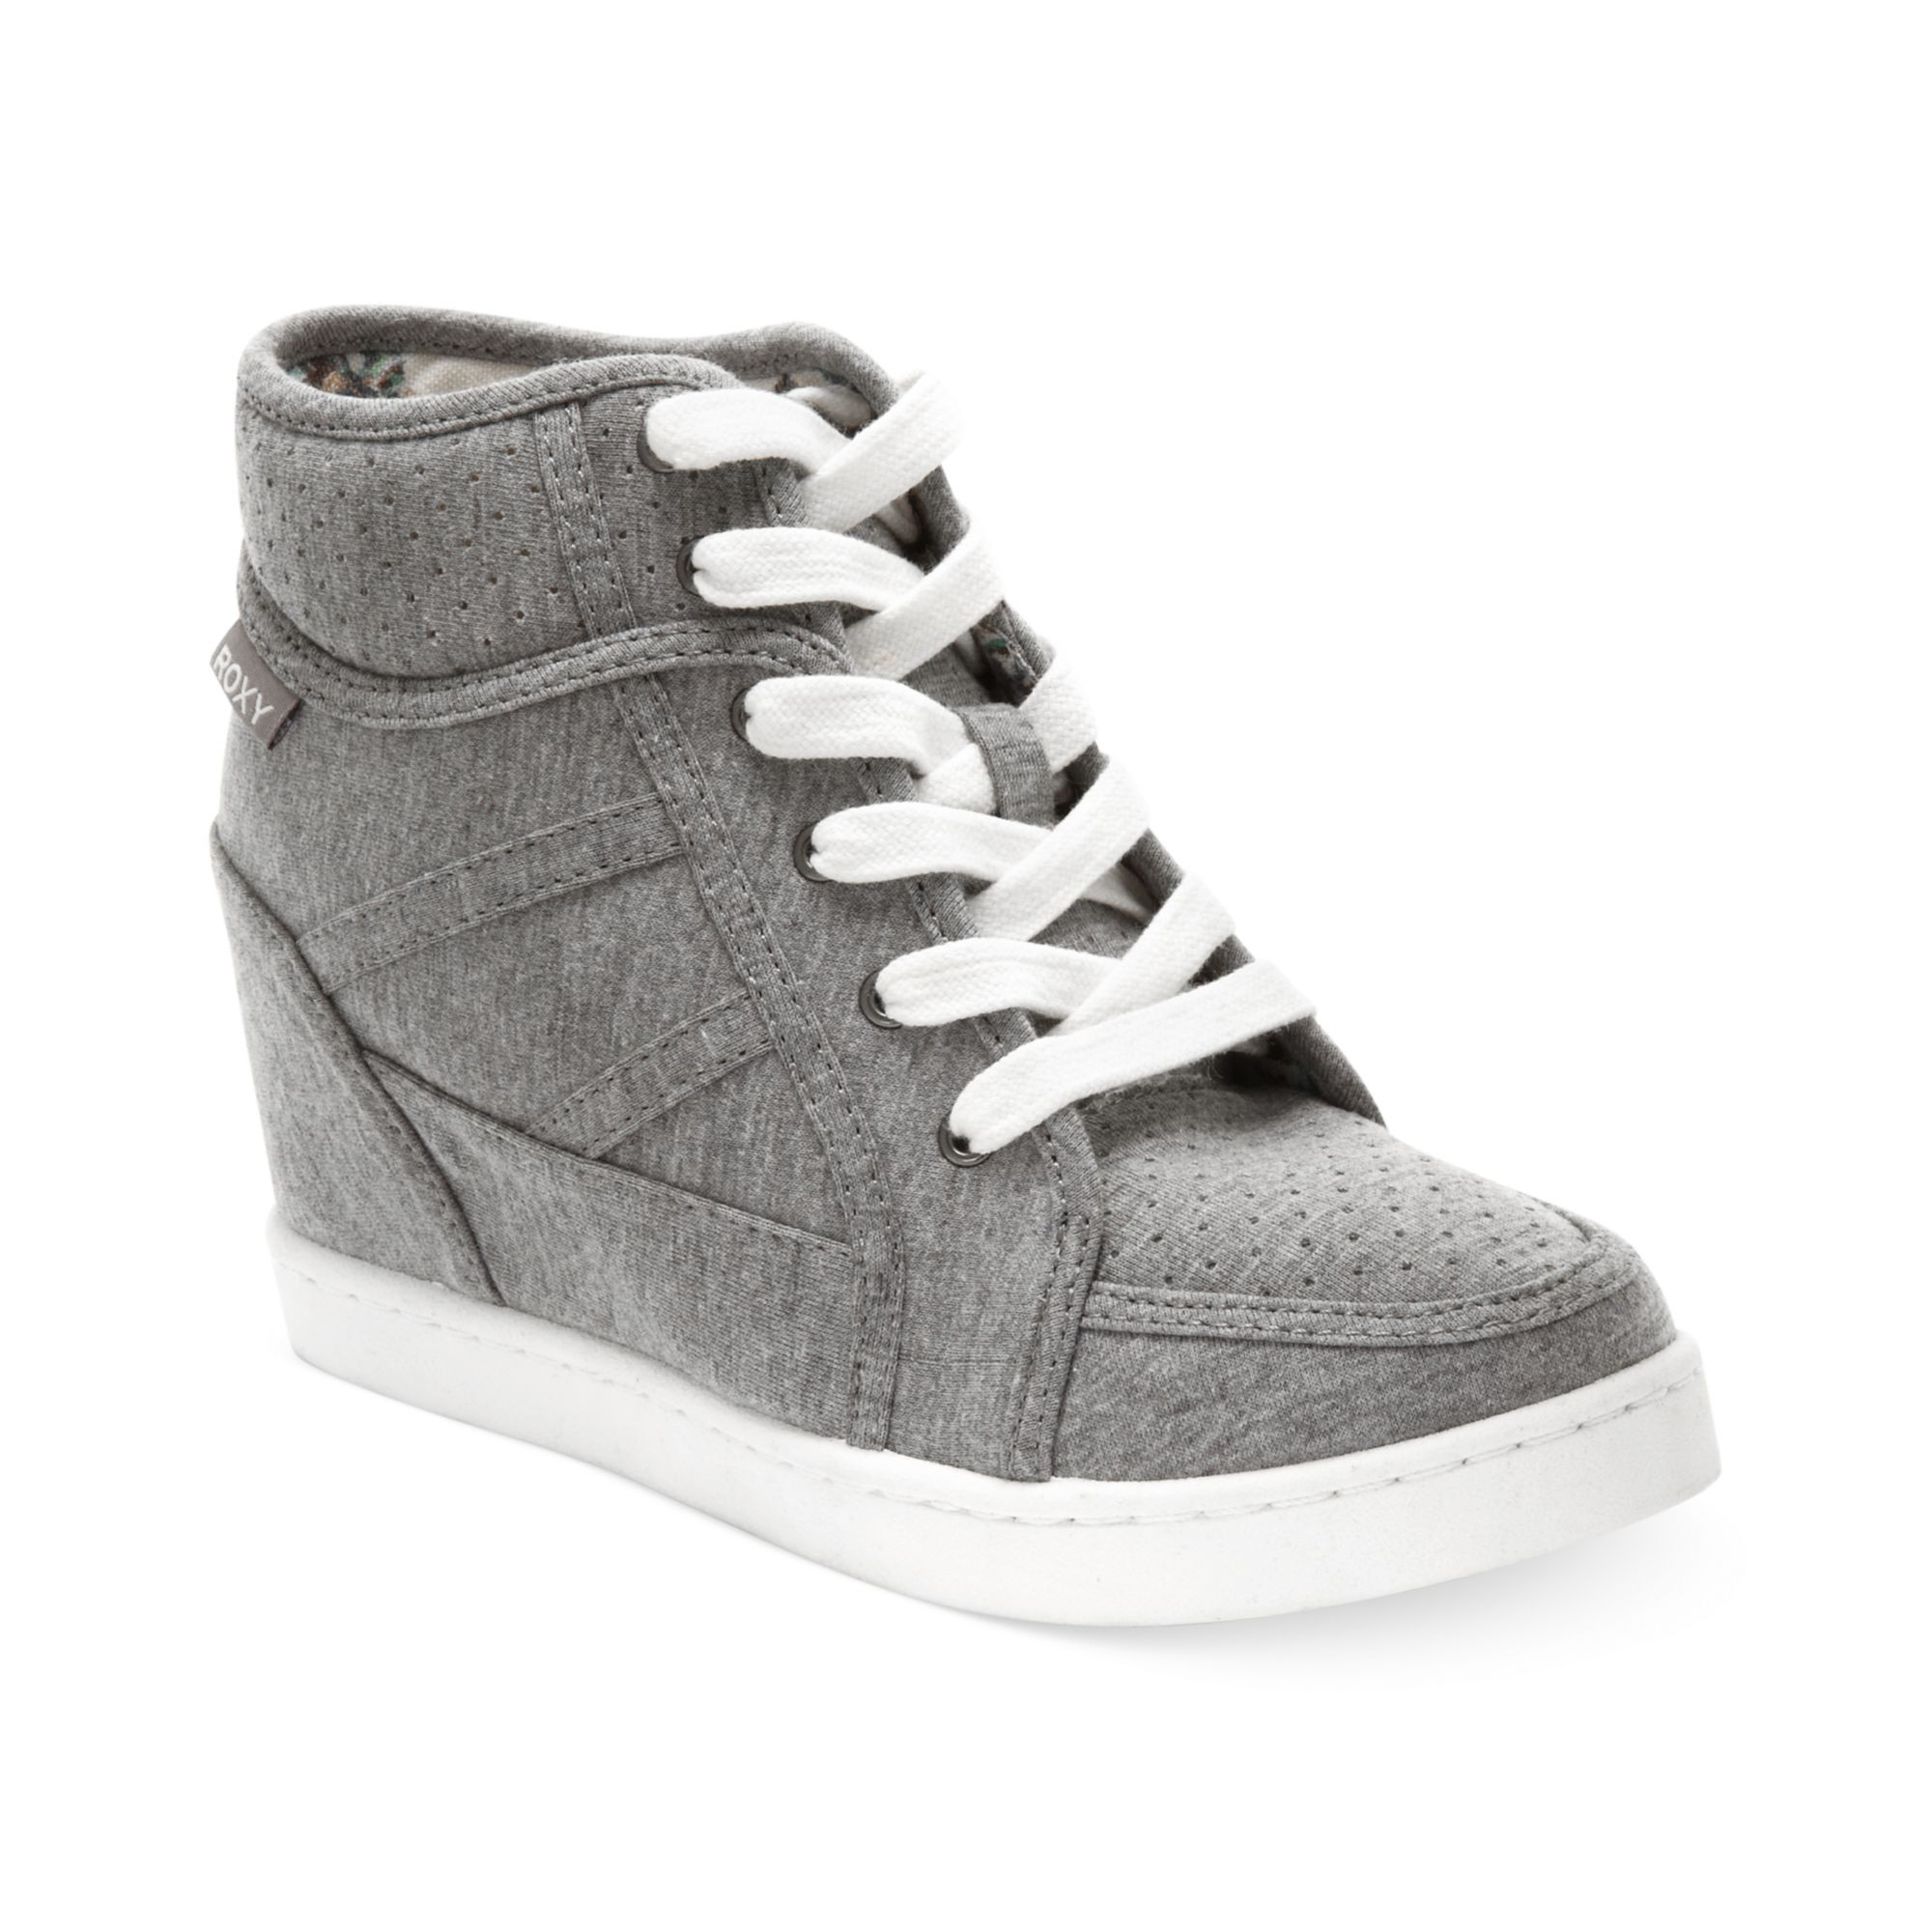 gray wedge sneakers